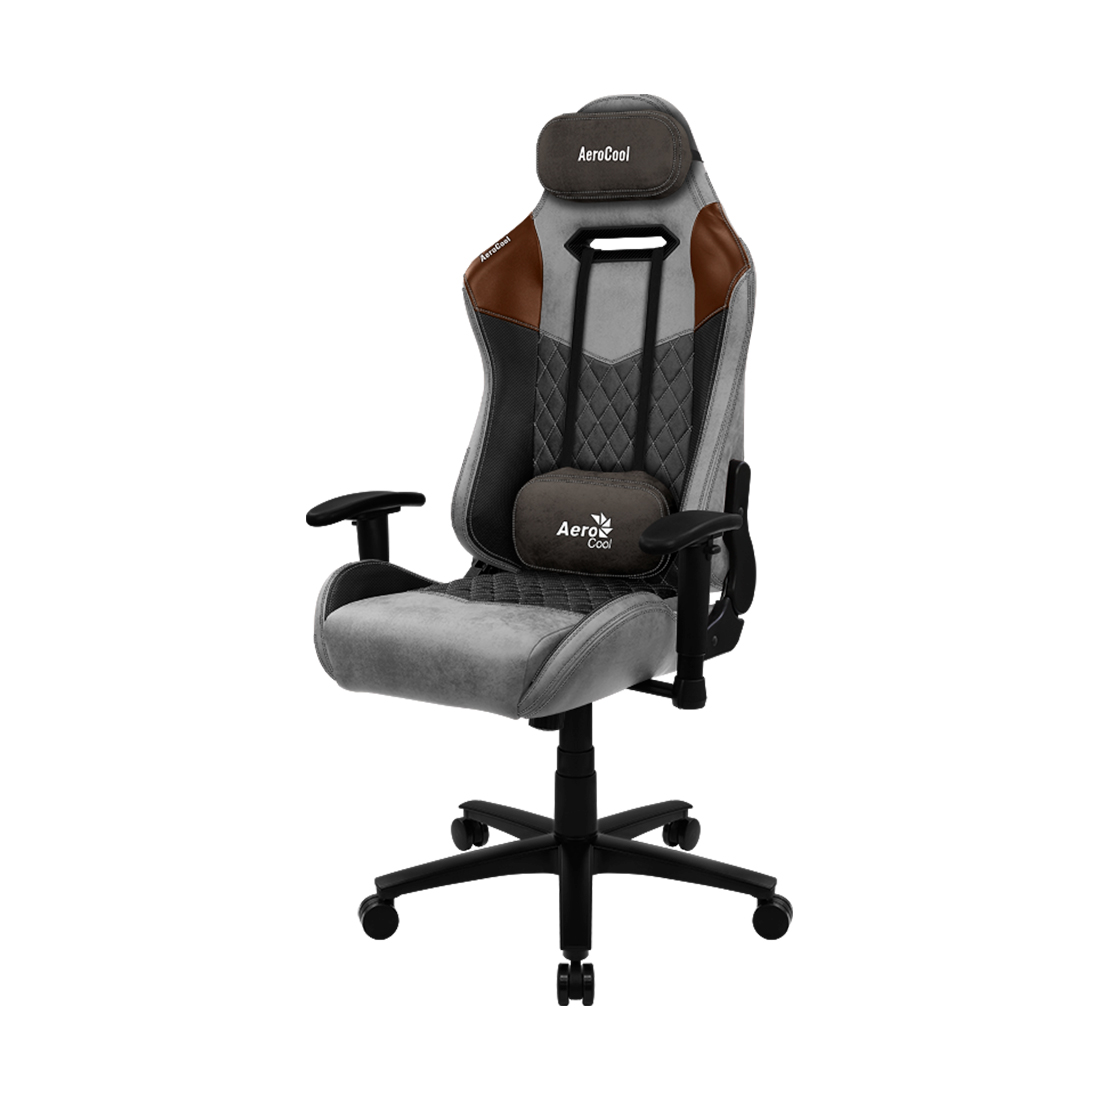 Игровое компьютерное кресло, Aerocool, DUKE Tan Grey, Искусственная кожа AeroSuede, (Ш)69*(Г)70*(В)1